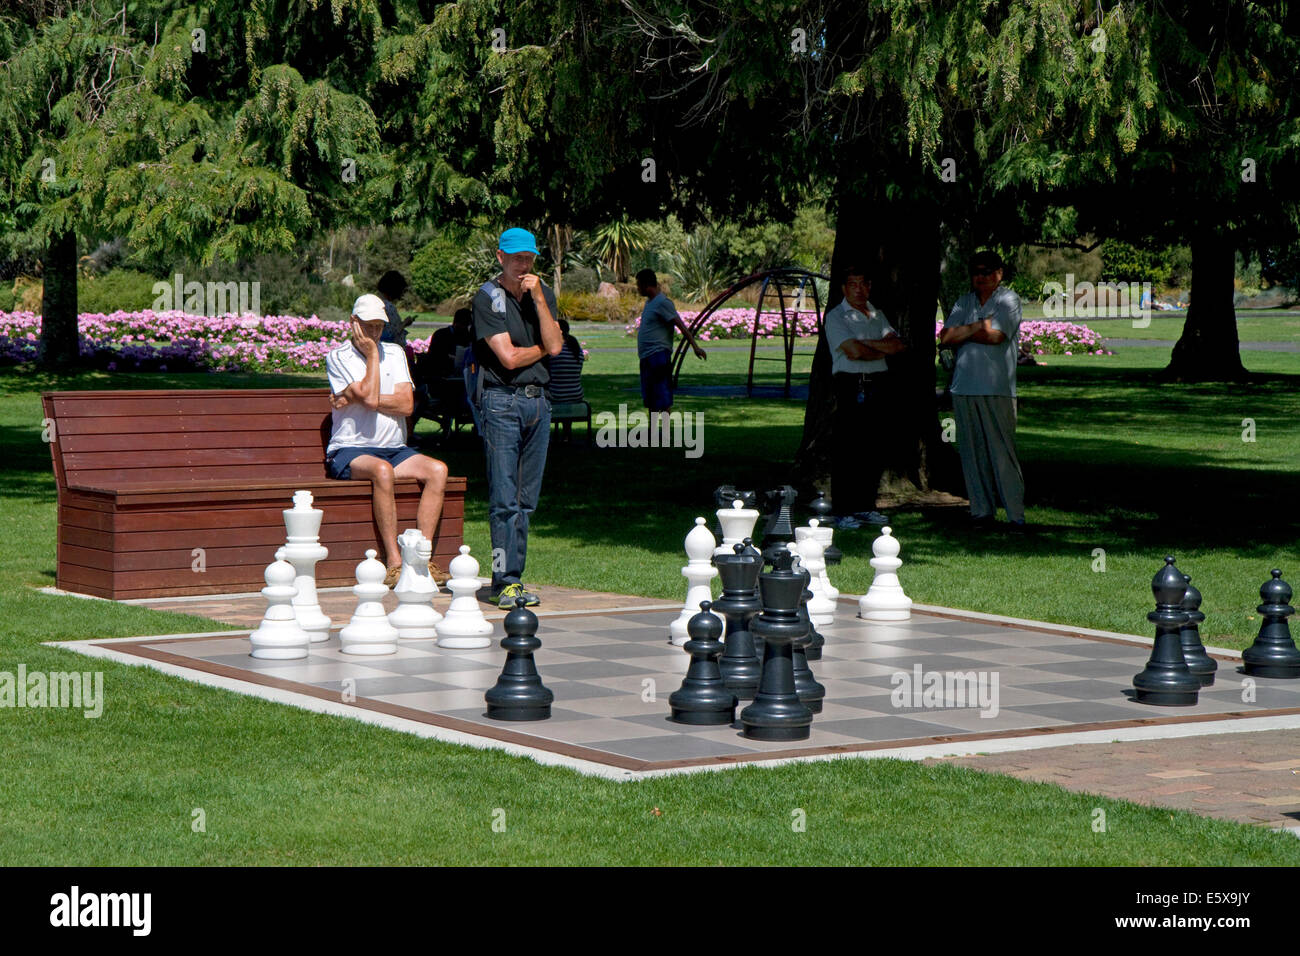 Schach im freien Spiel in einem Park am Taupo in der Waikato-Region, Nordinsel, Neuseeland. Stockfoto